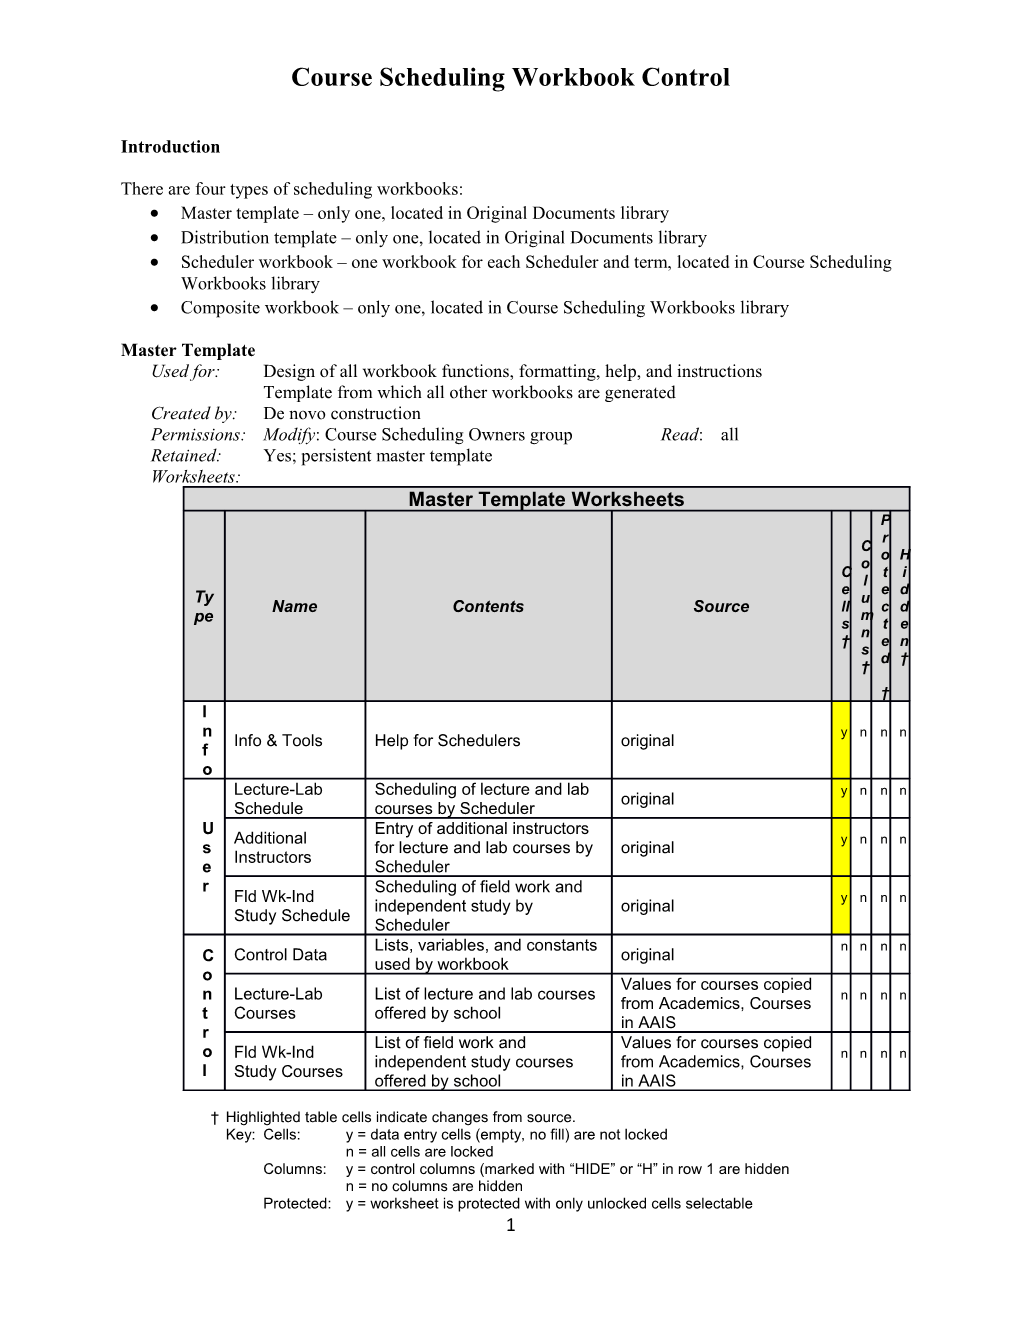 Scheduling Workbook Control, Version 0